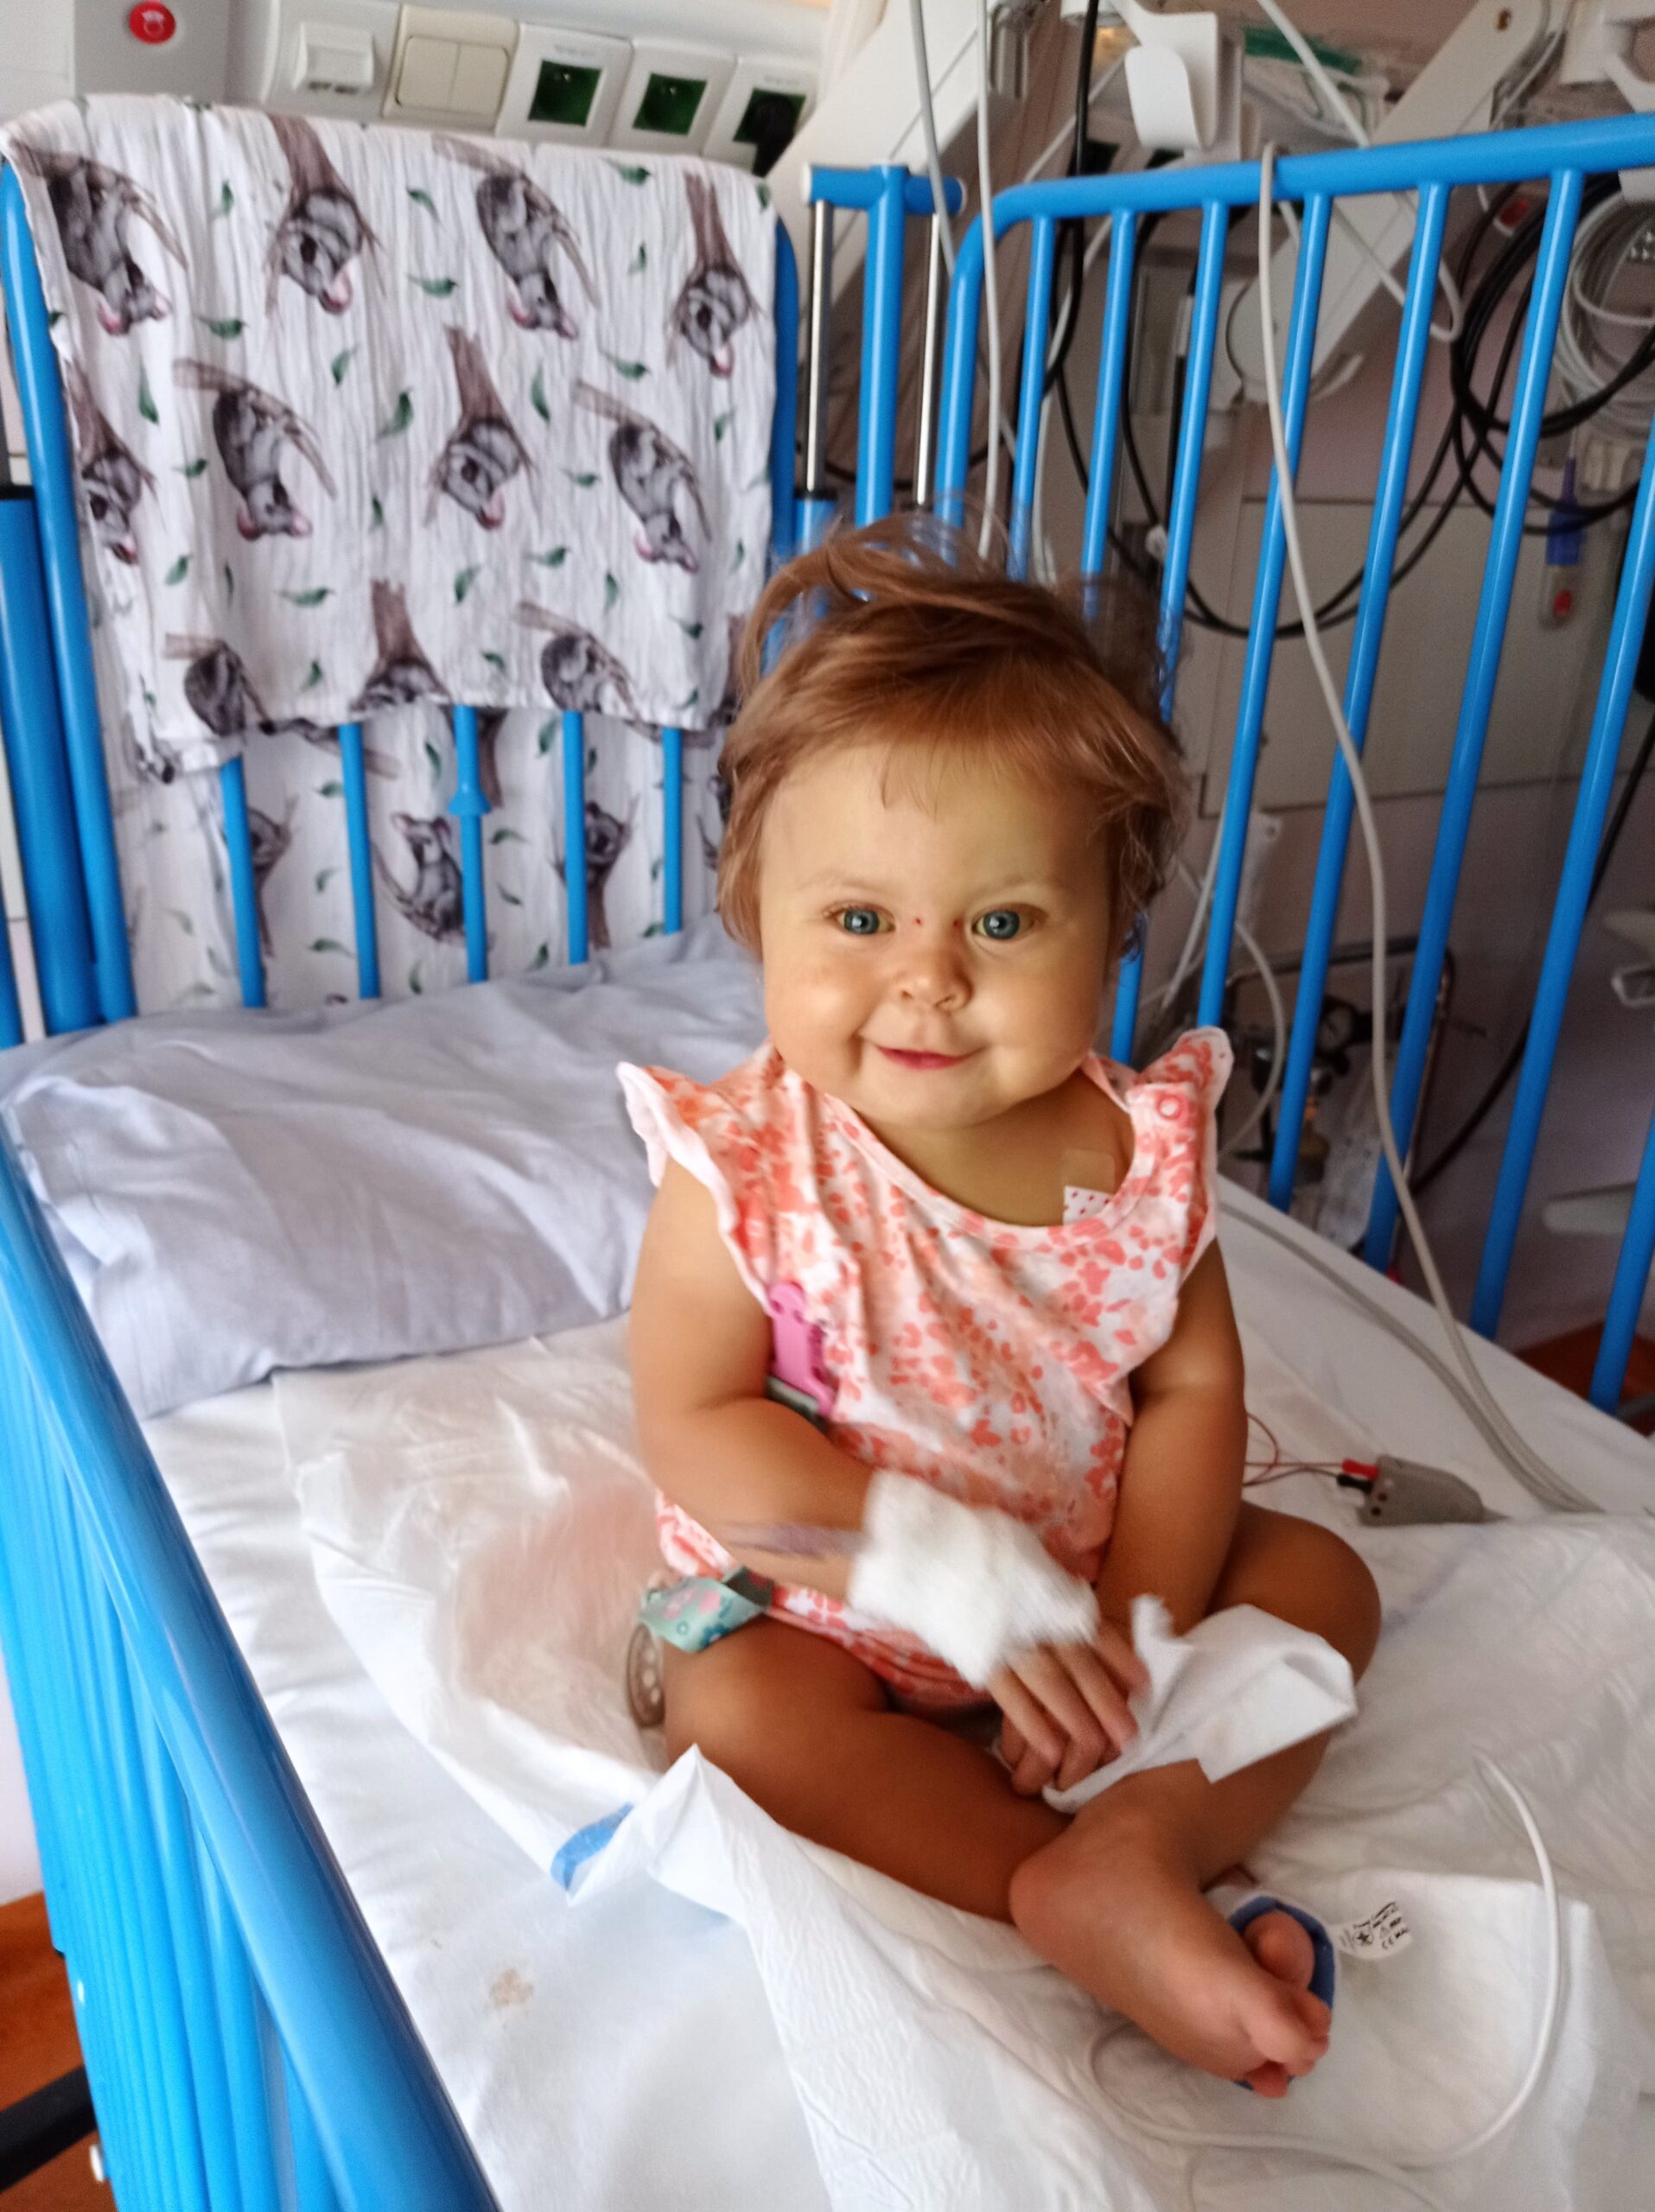 Mała dziewczynka Alicja Cielecka siedzi na łóżeczku szpitalnym i usmiecha się do zdjęcia mimo że podpięta jest do aparatury medycznej